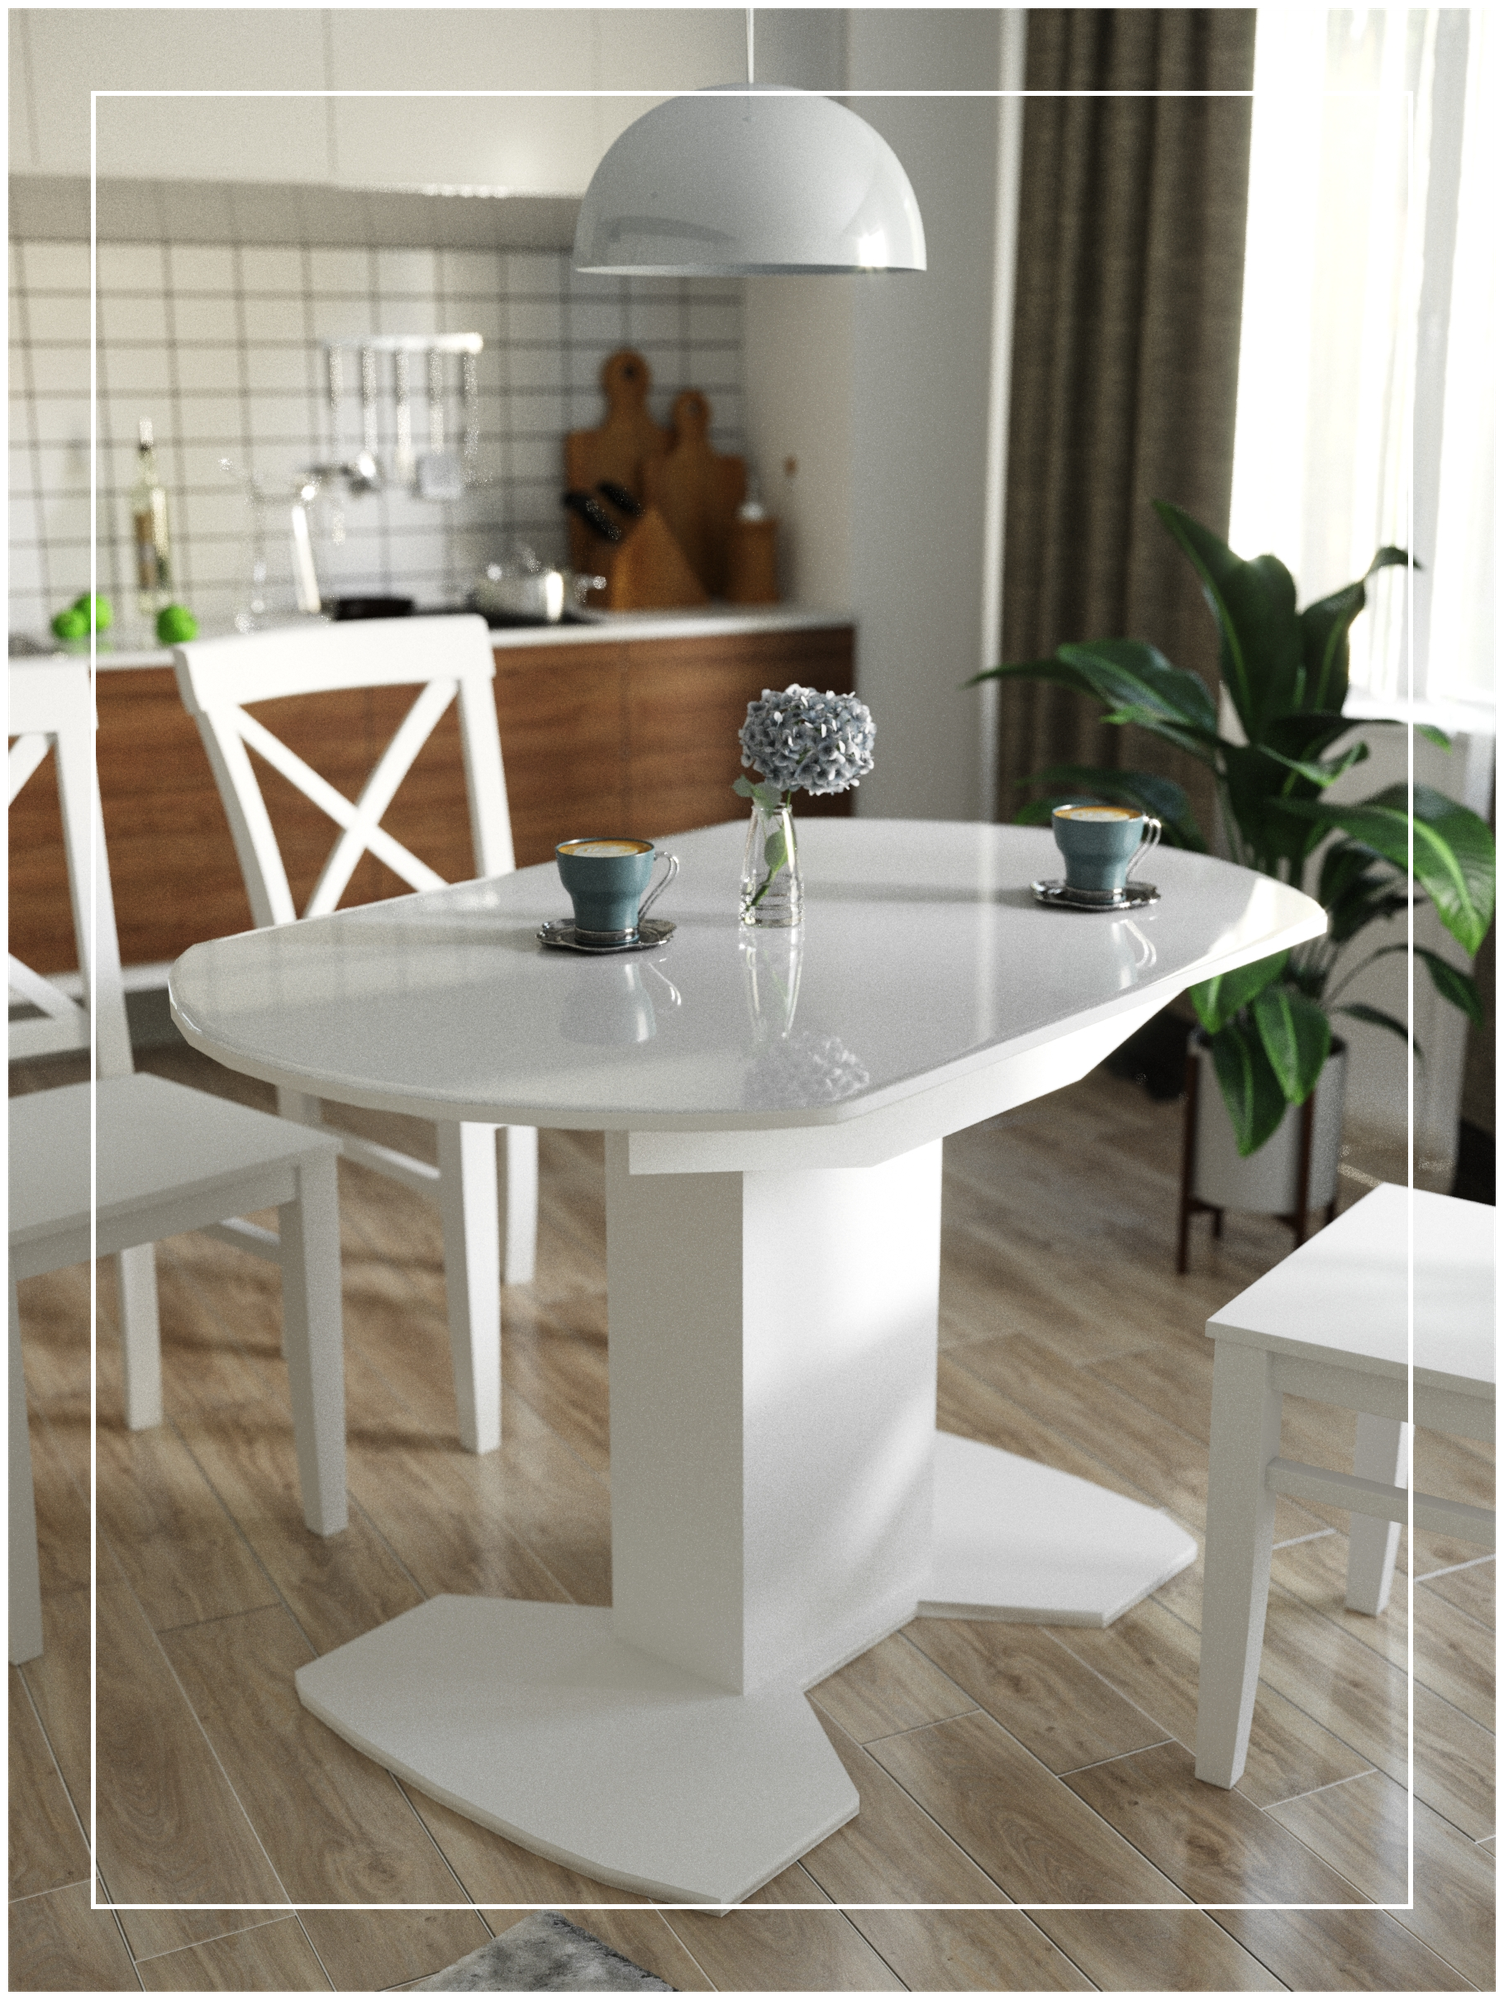 Стол кухонный Каприз стеклянный белый 110(142)*70*76 / стол обеденный / раскладной стол на кухню / для кухни / для гостиной / для дачи / маленький /